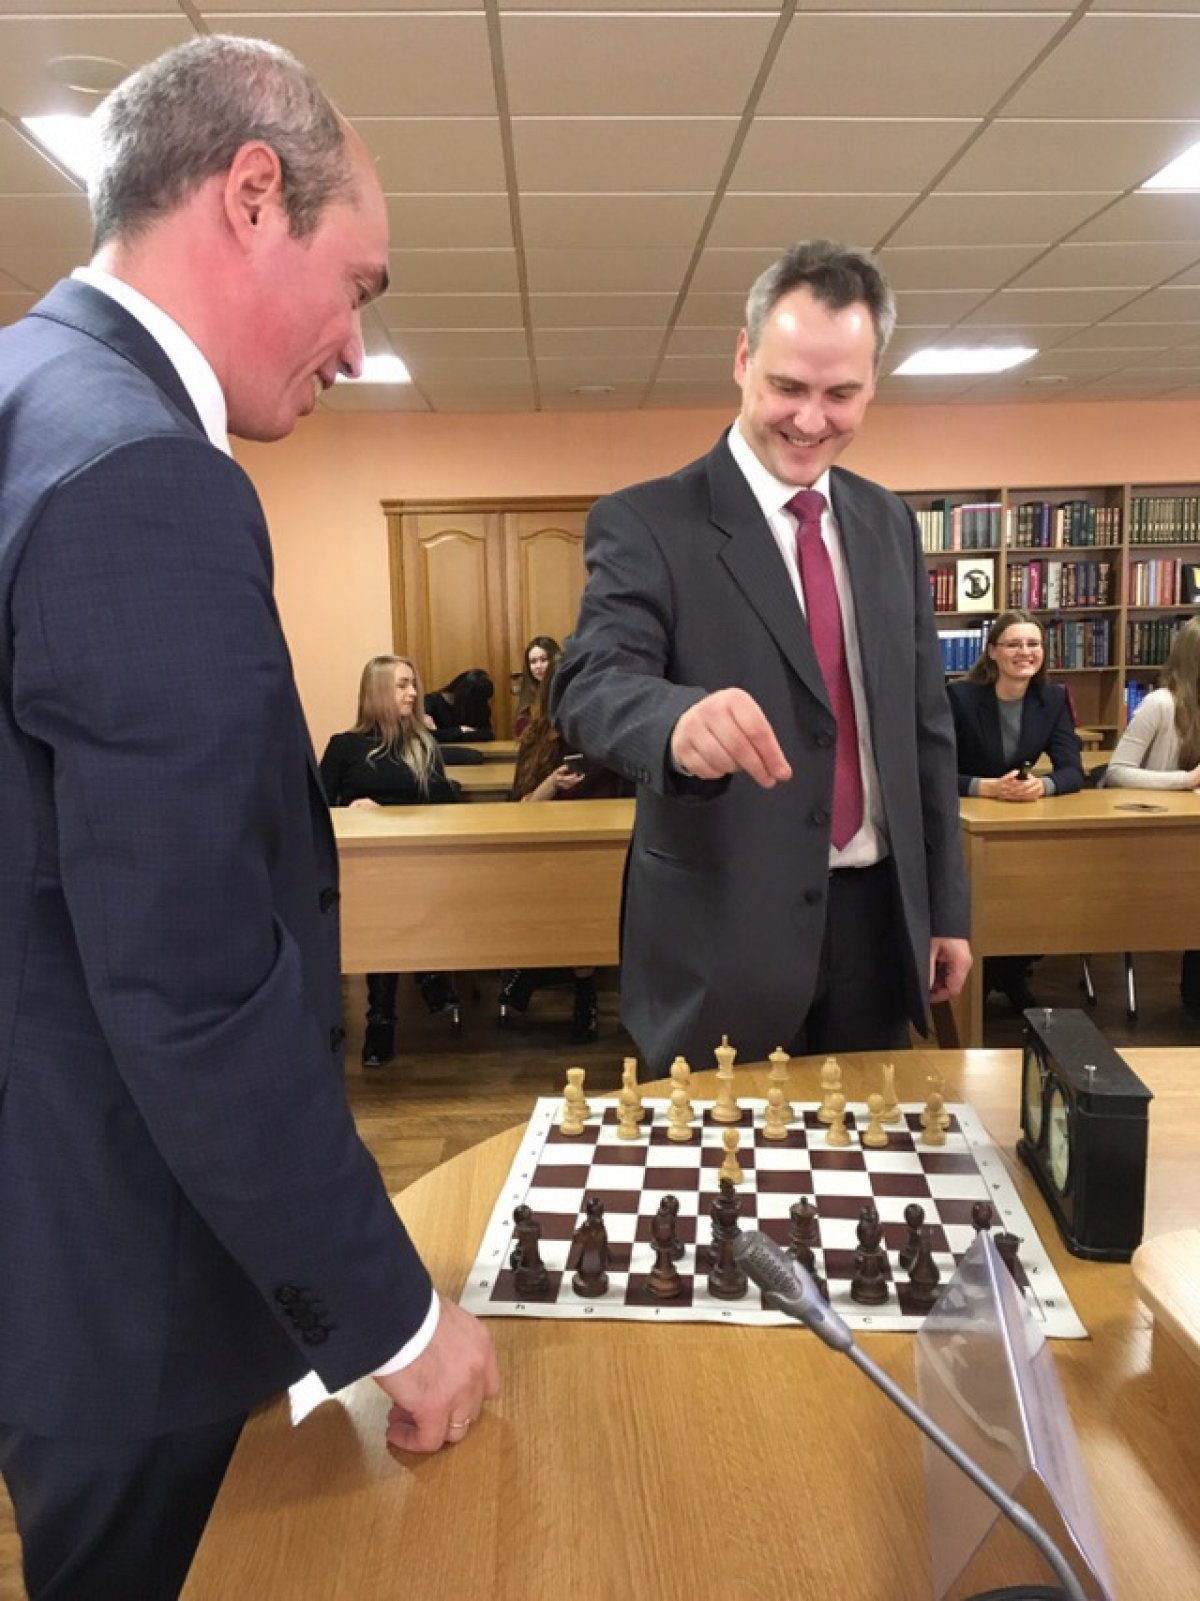 АлтГУ подписал соглашение о сотрудничестве с Федерацией шахмат Алтайского края!👏🏼